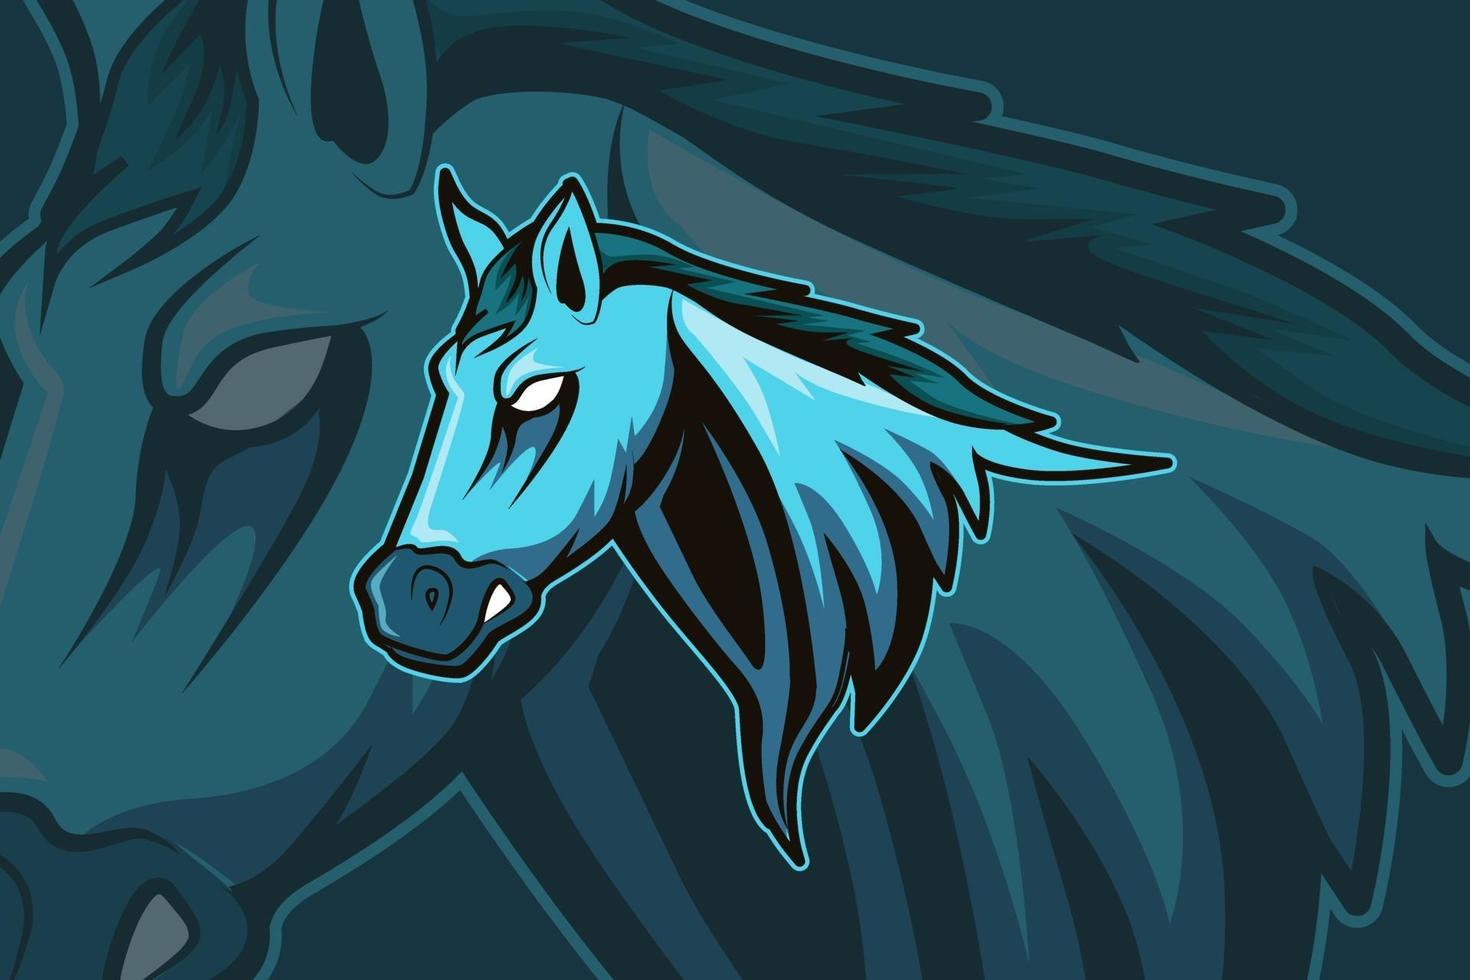 Pferdemaskottchen für Sport- und Esport-Logo auf dunklem Hintergrund isoliert vektor